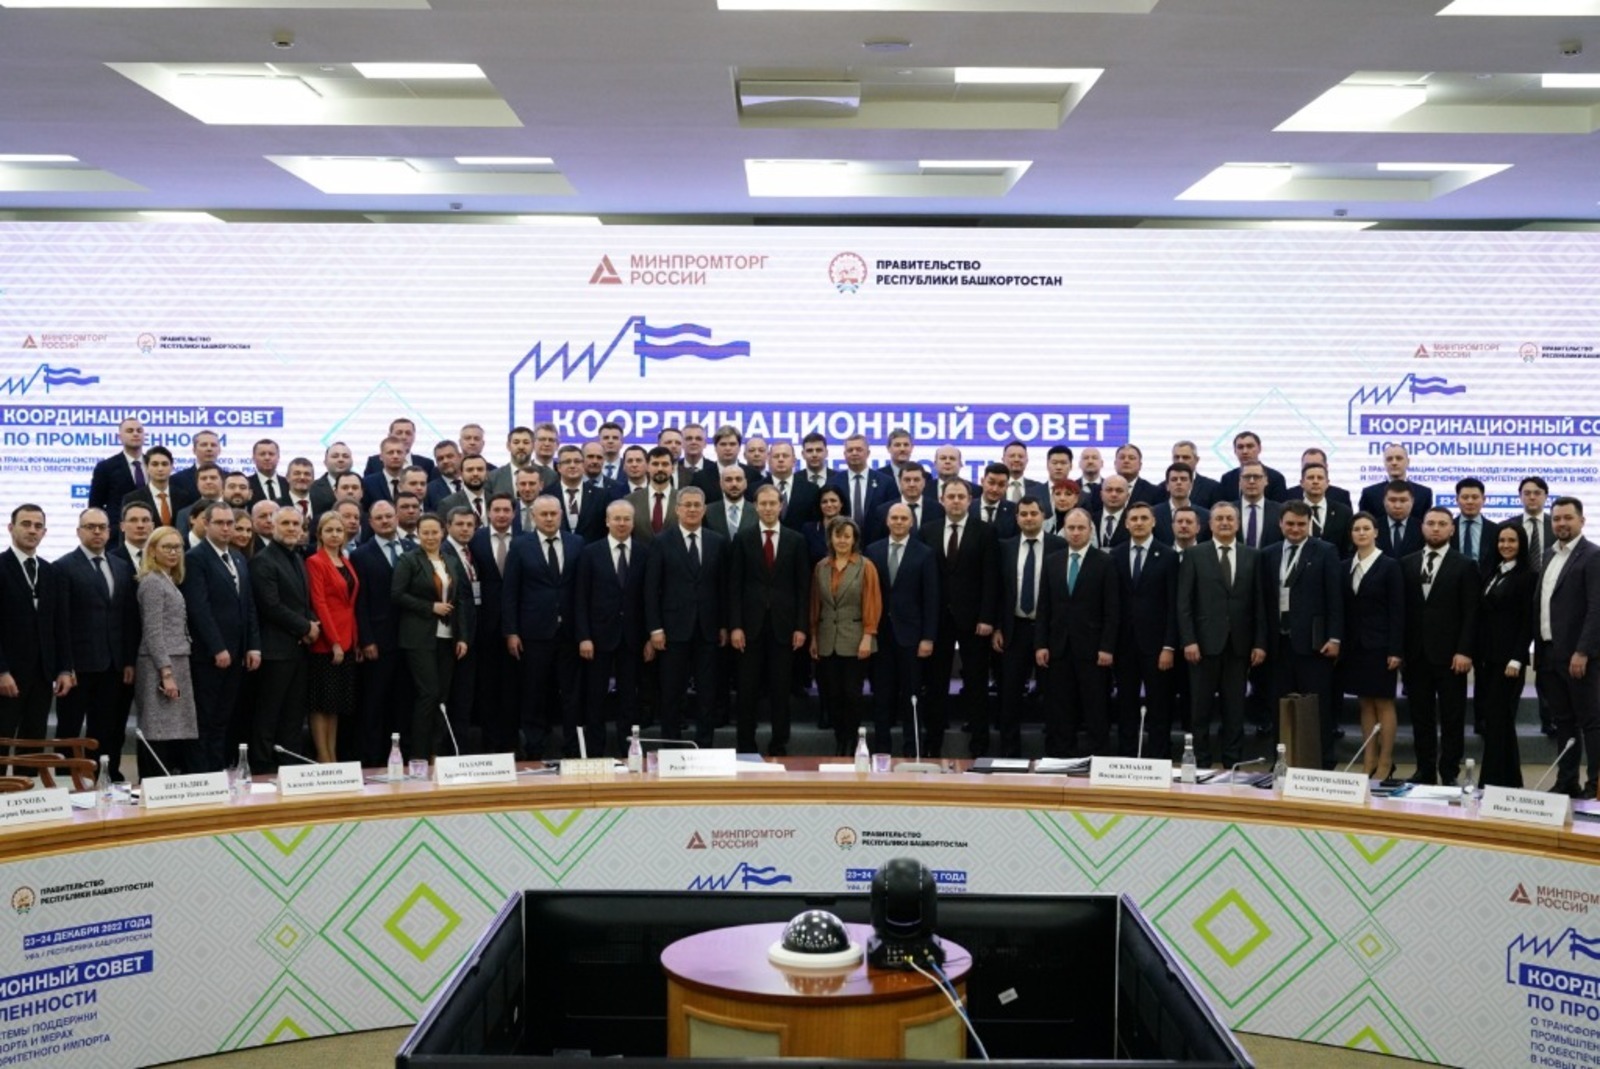 В заседании Координационного совета по промышленности в Уфе приняли участие 70 министров из регионов России